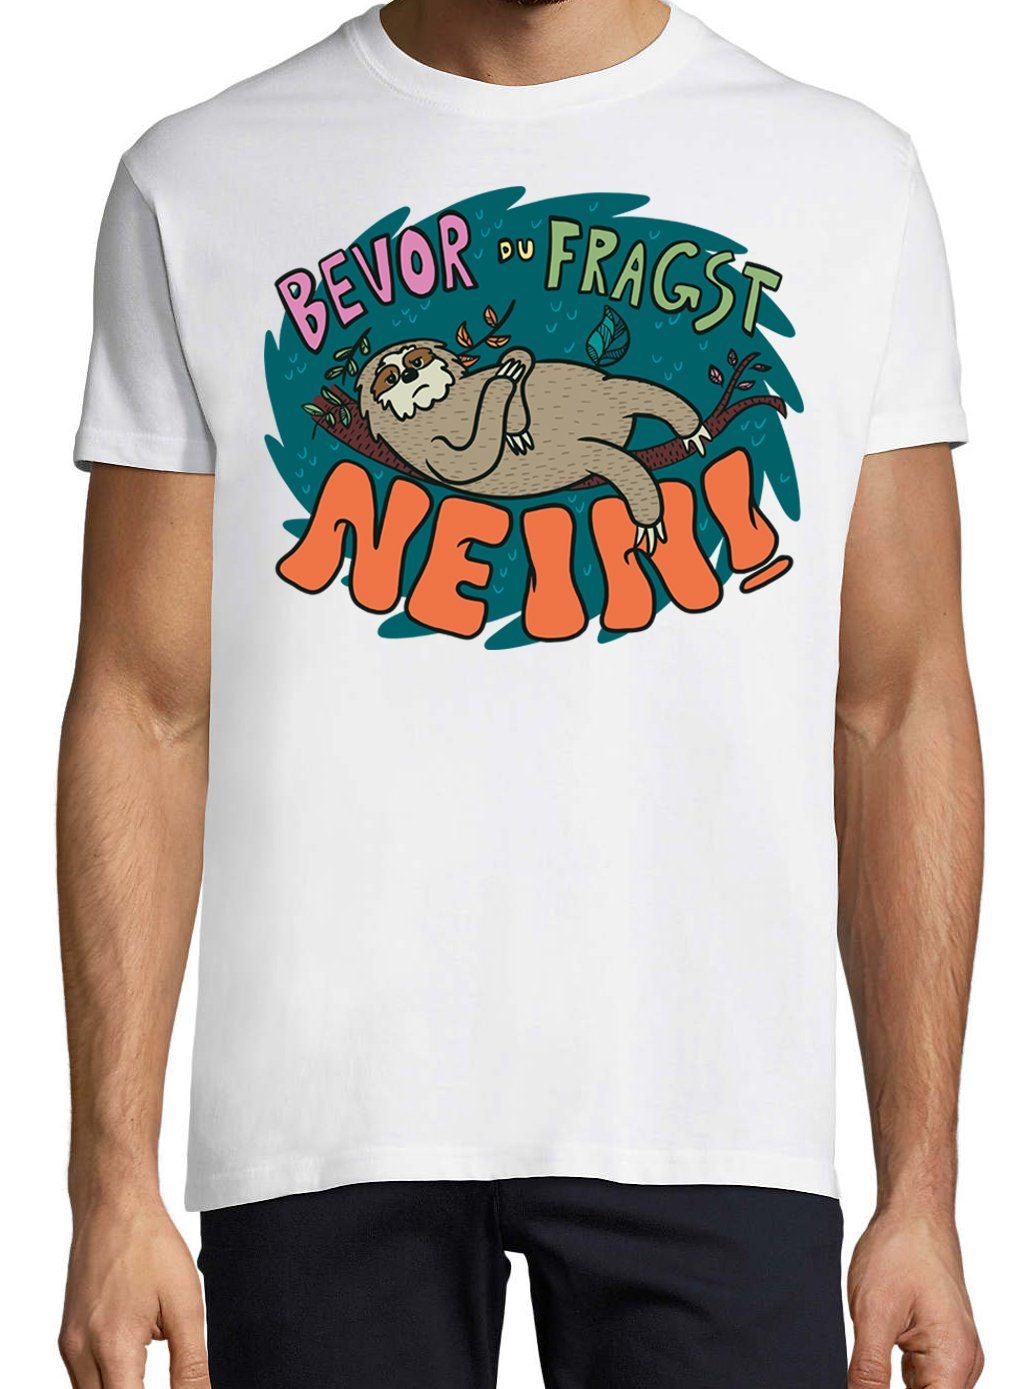 Bevor Trendigem Youth NEIN T-Shirt Frontdruck Herren Weiss mit T-Shirt fragst du Faultier Designz